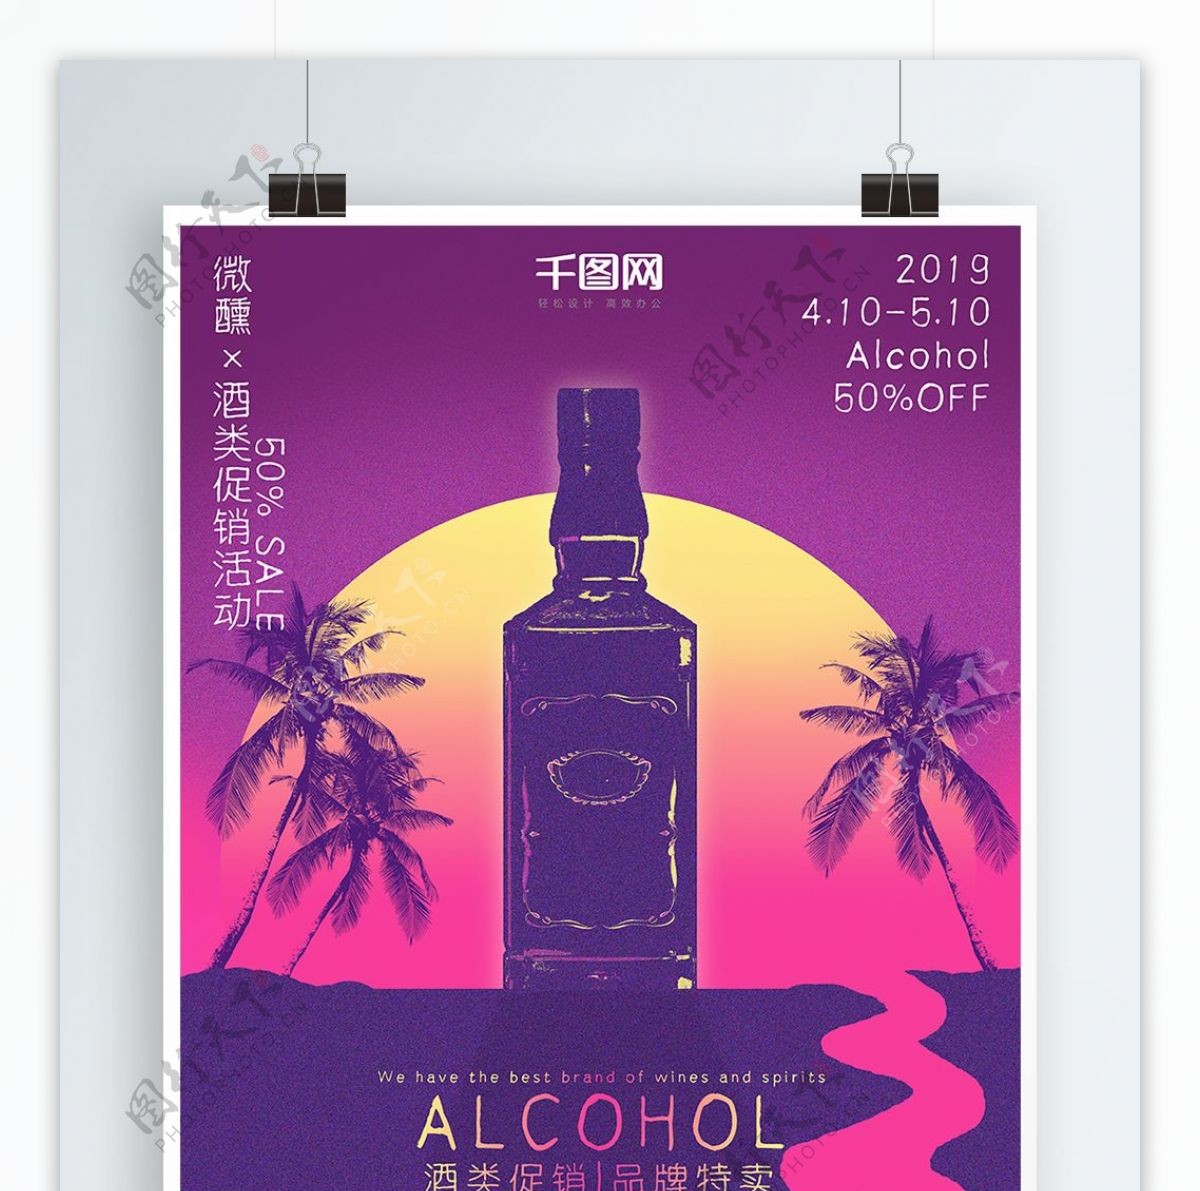 复古微醺主题酒吧促销海报